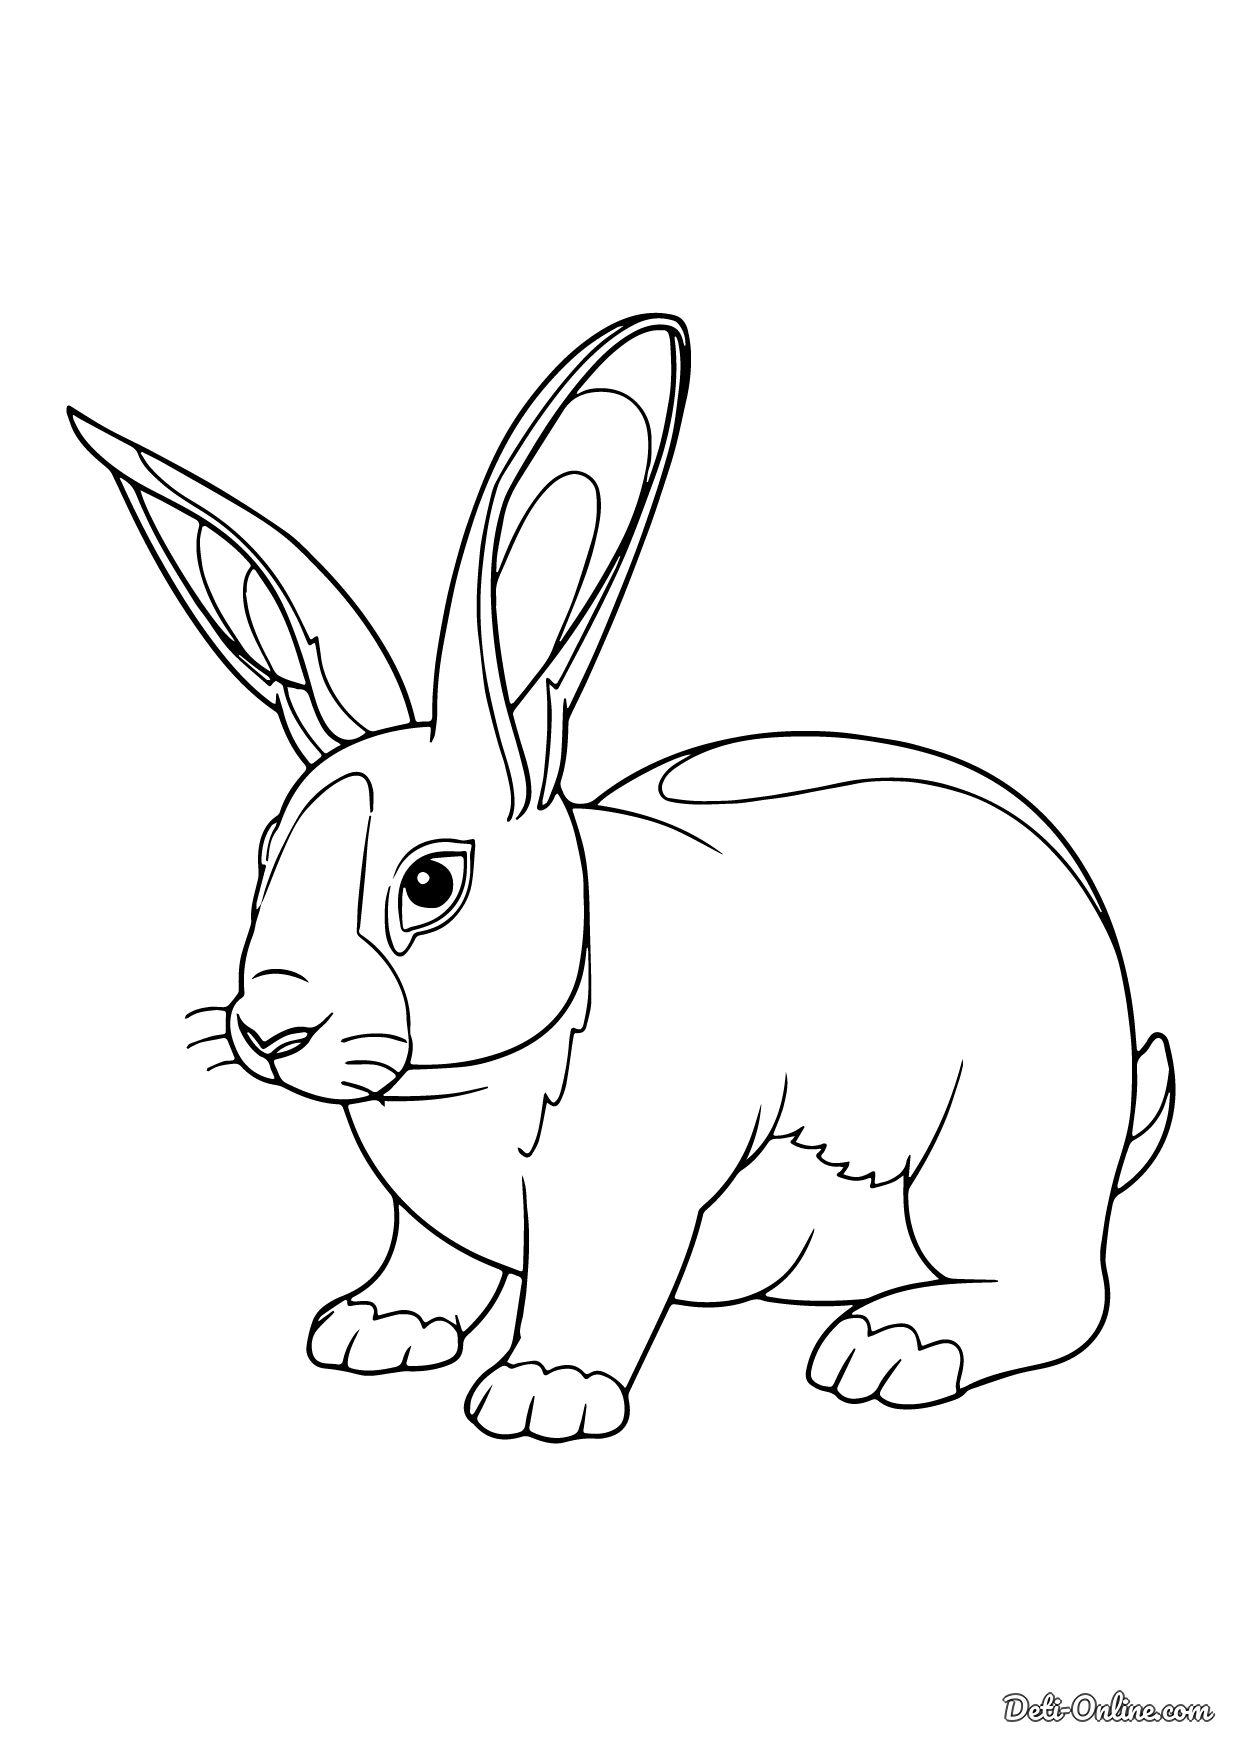 Раскраска Красивый кролик распечатать или скачать